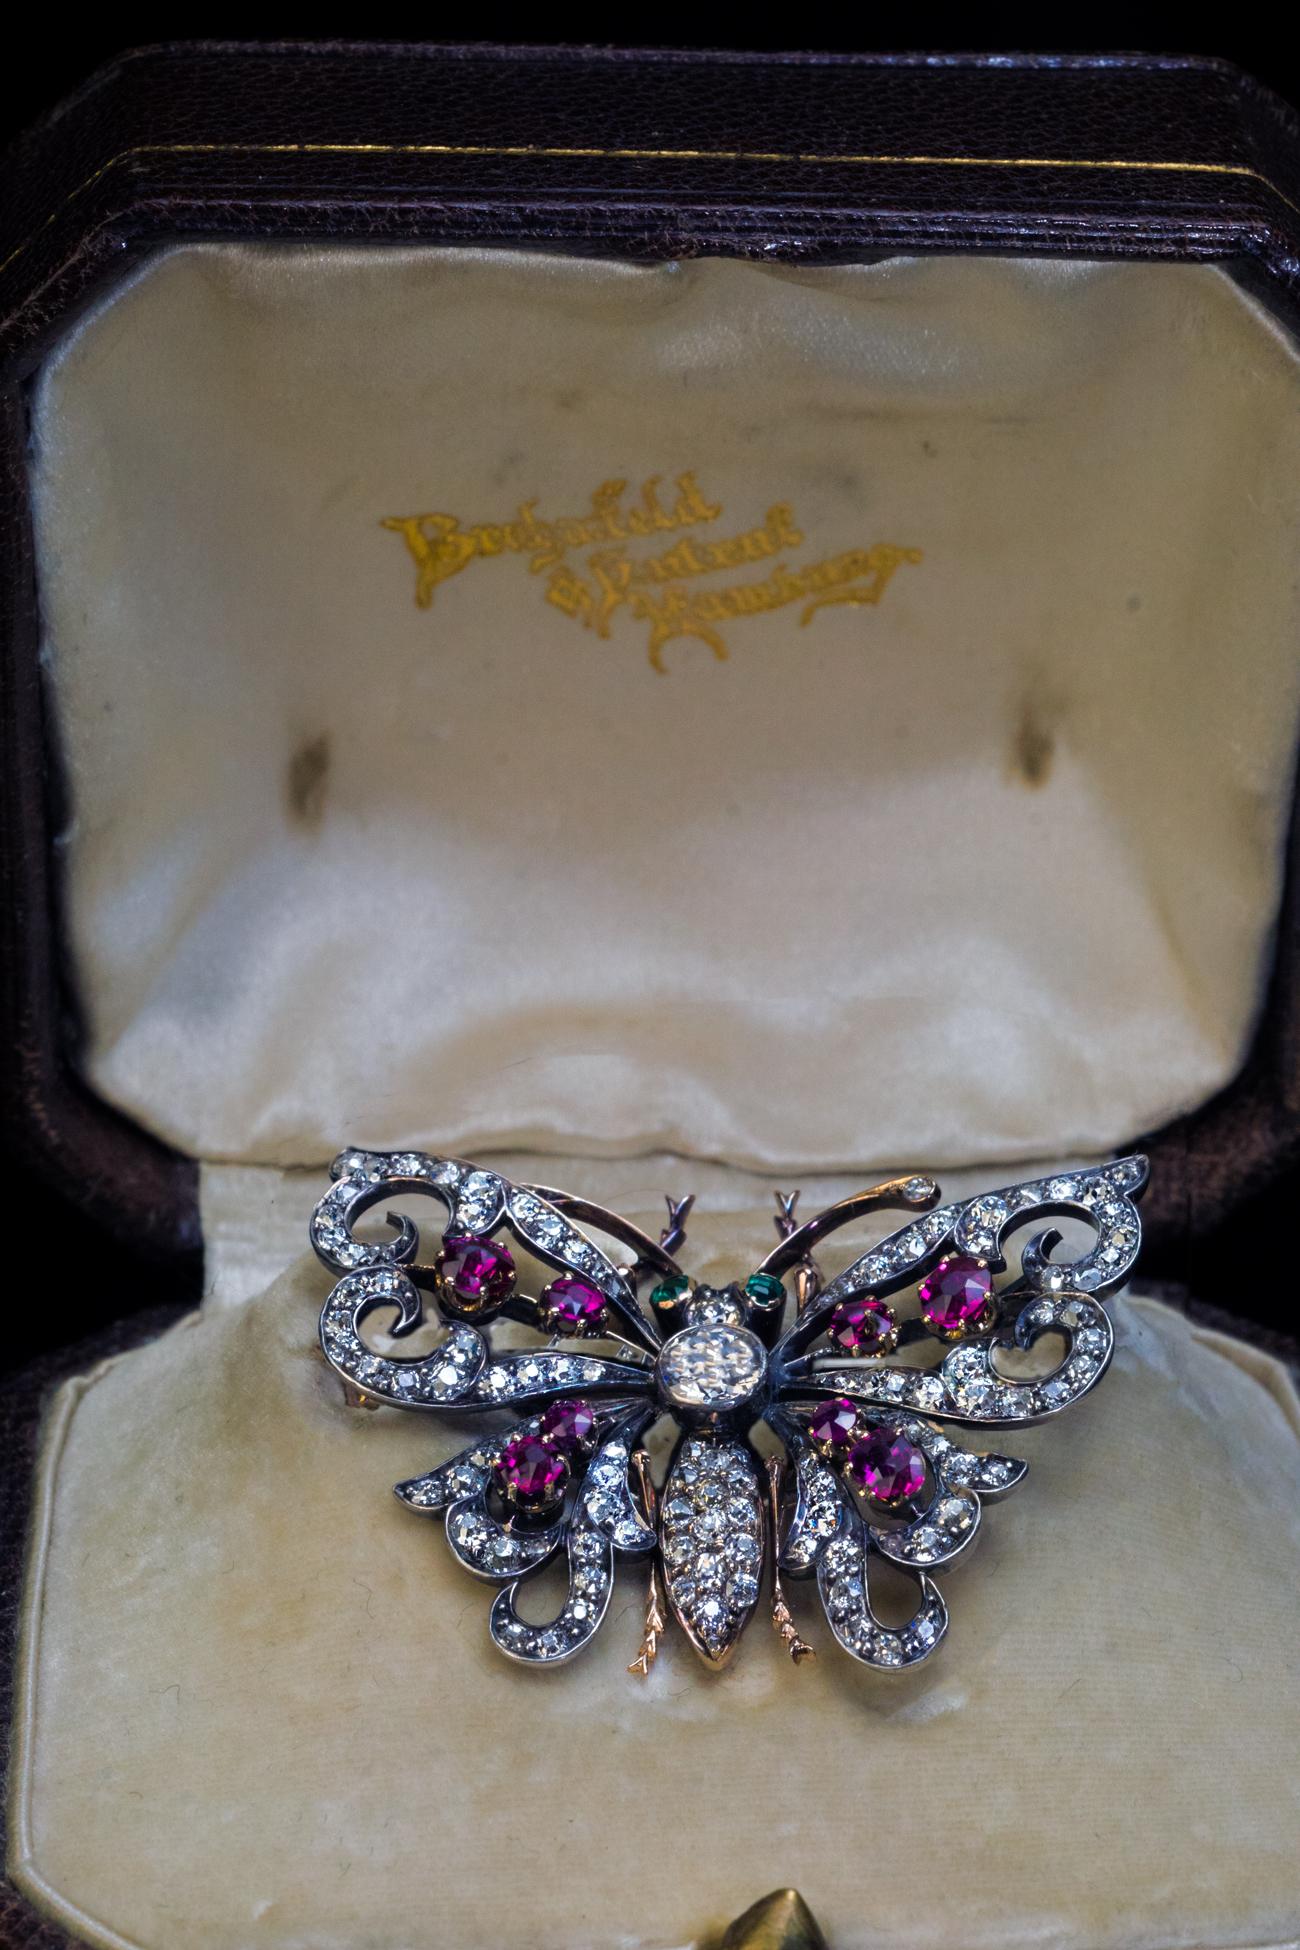 Deutschland, um 1900

Die fein modellierte Schmetterlingsbrosche ist aus Silber und 14 Karat Gold handgefertigt. Die Brosche ist mit leuchtend weißen Diamanten, Rubinen und Smaragden im alten europäischen und alten Minenschliff verziert.

Das